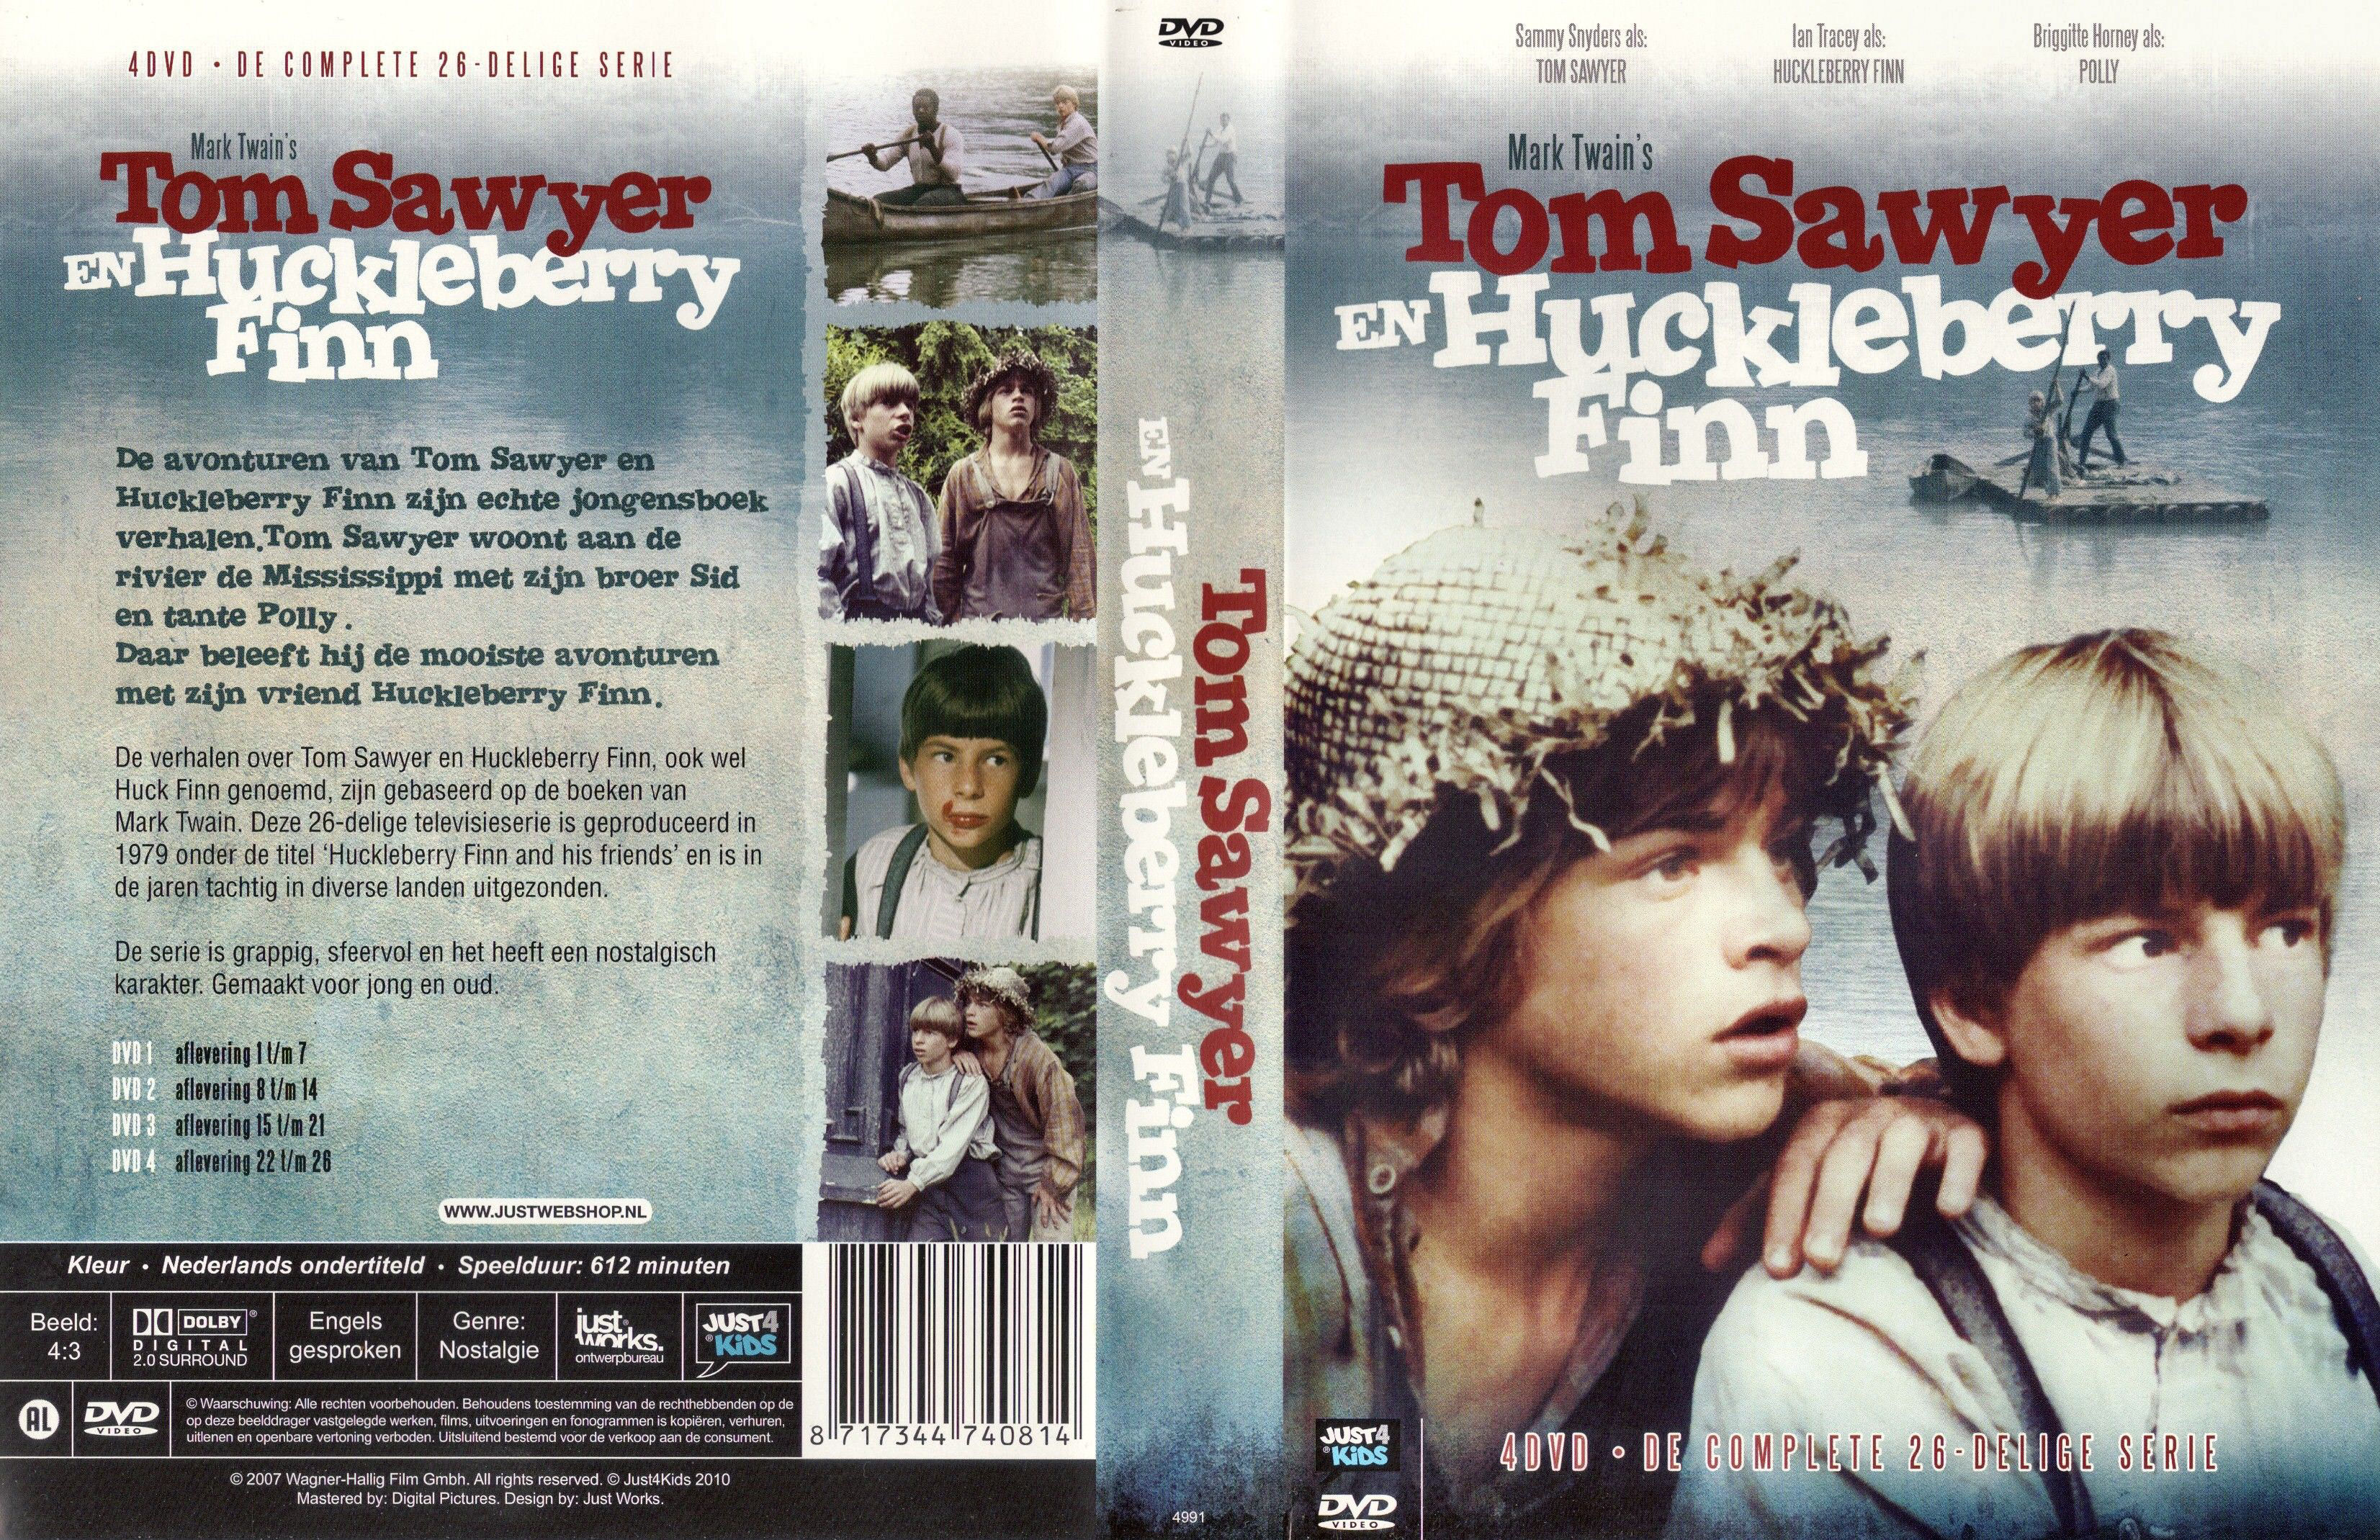 Tom Sawyer en Huckleberry Finn (1979) - DvD 4 - Finale